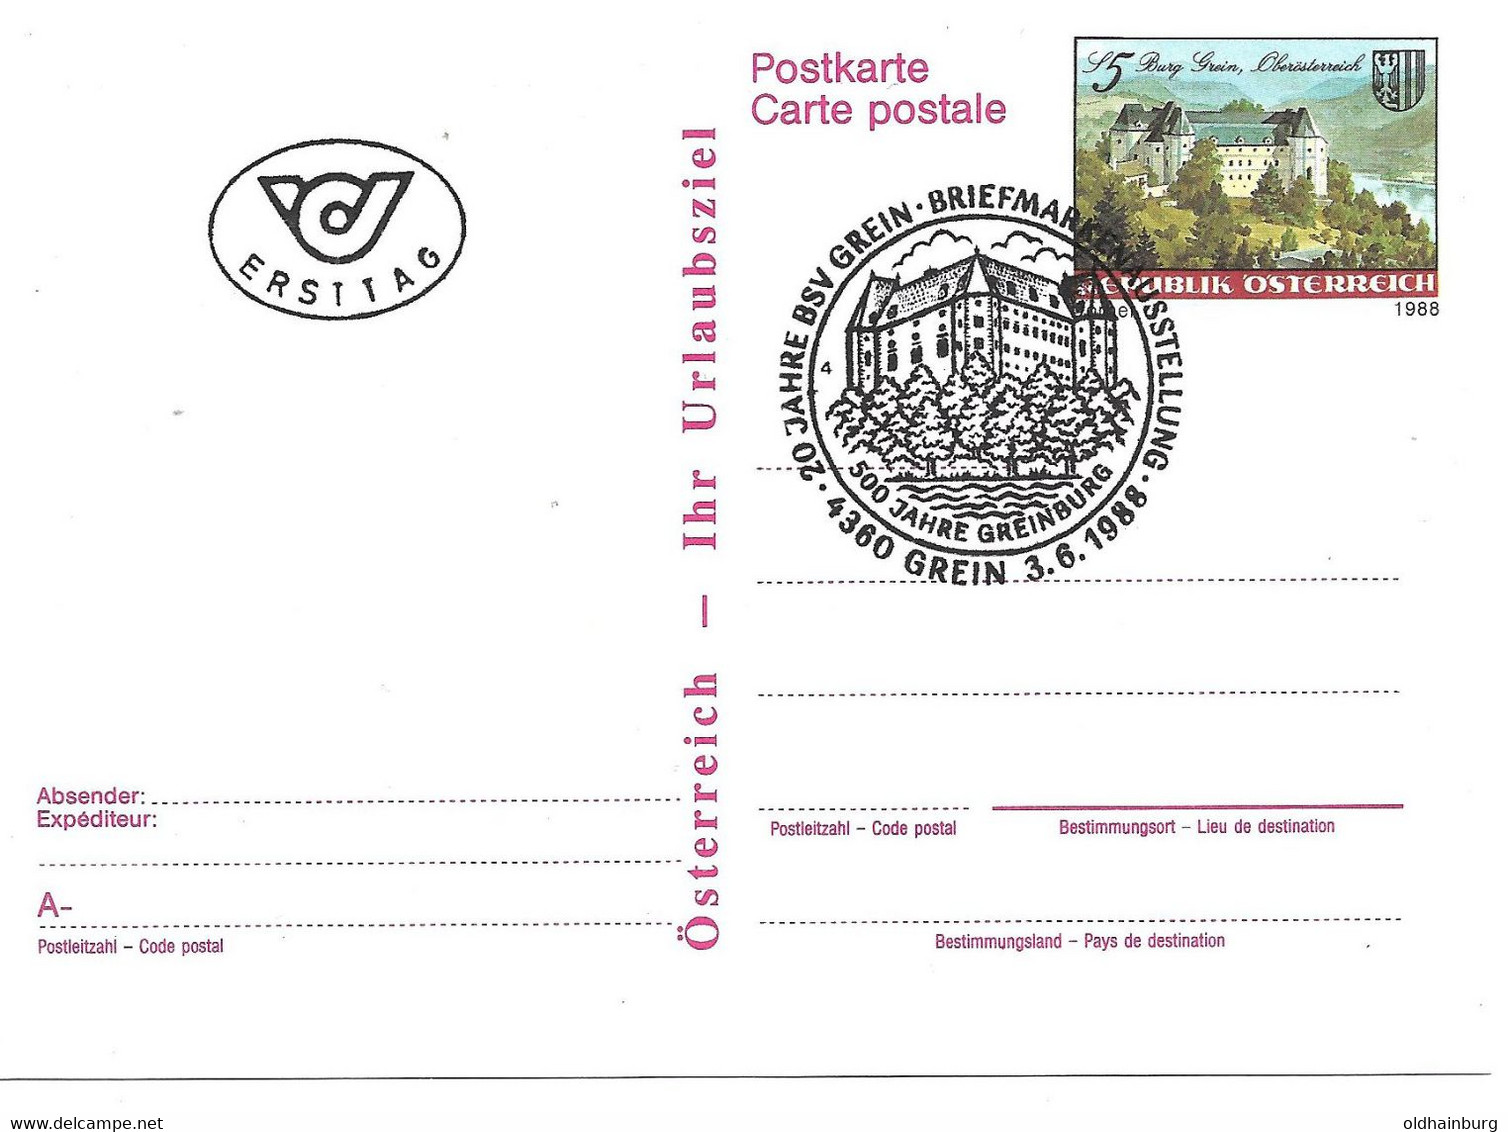 2162a: Österreich 1988: Postkarte ANK 391, Burg Grein, FDC- Stempel 4360 Grein (ANK 17.- €) - Grein